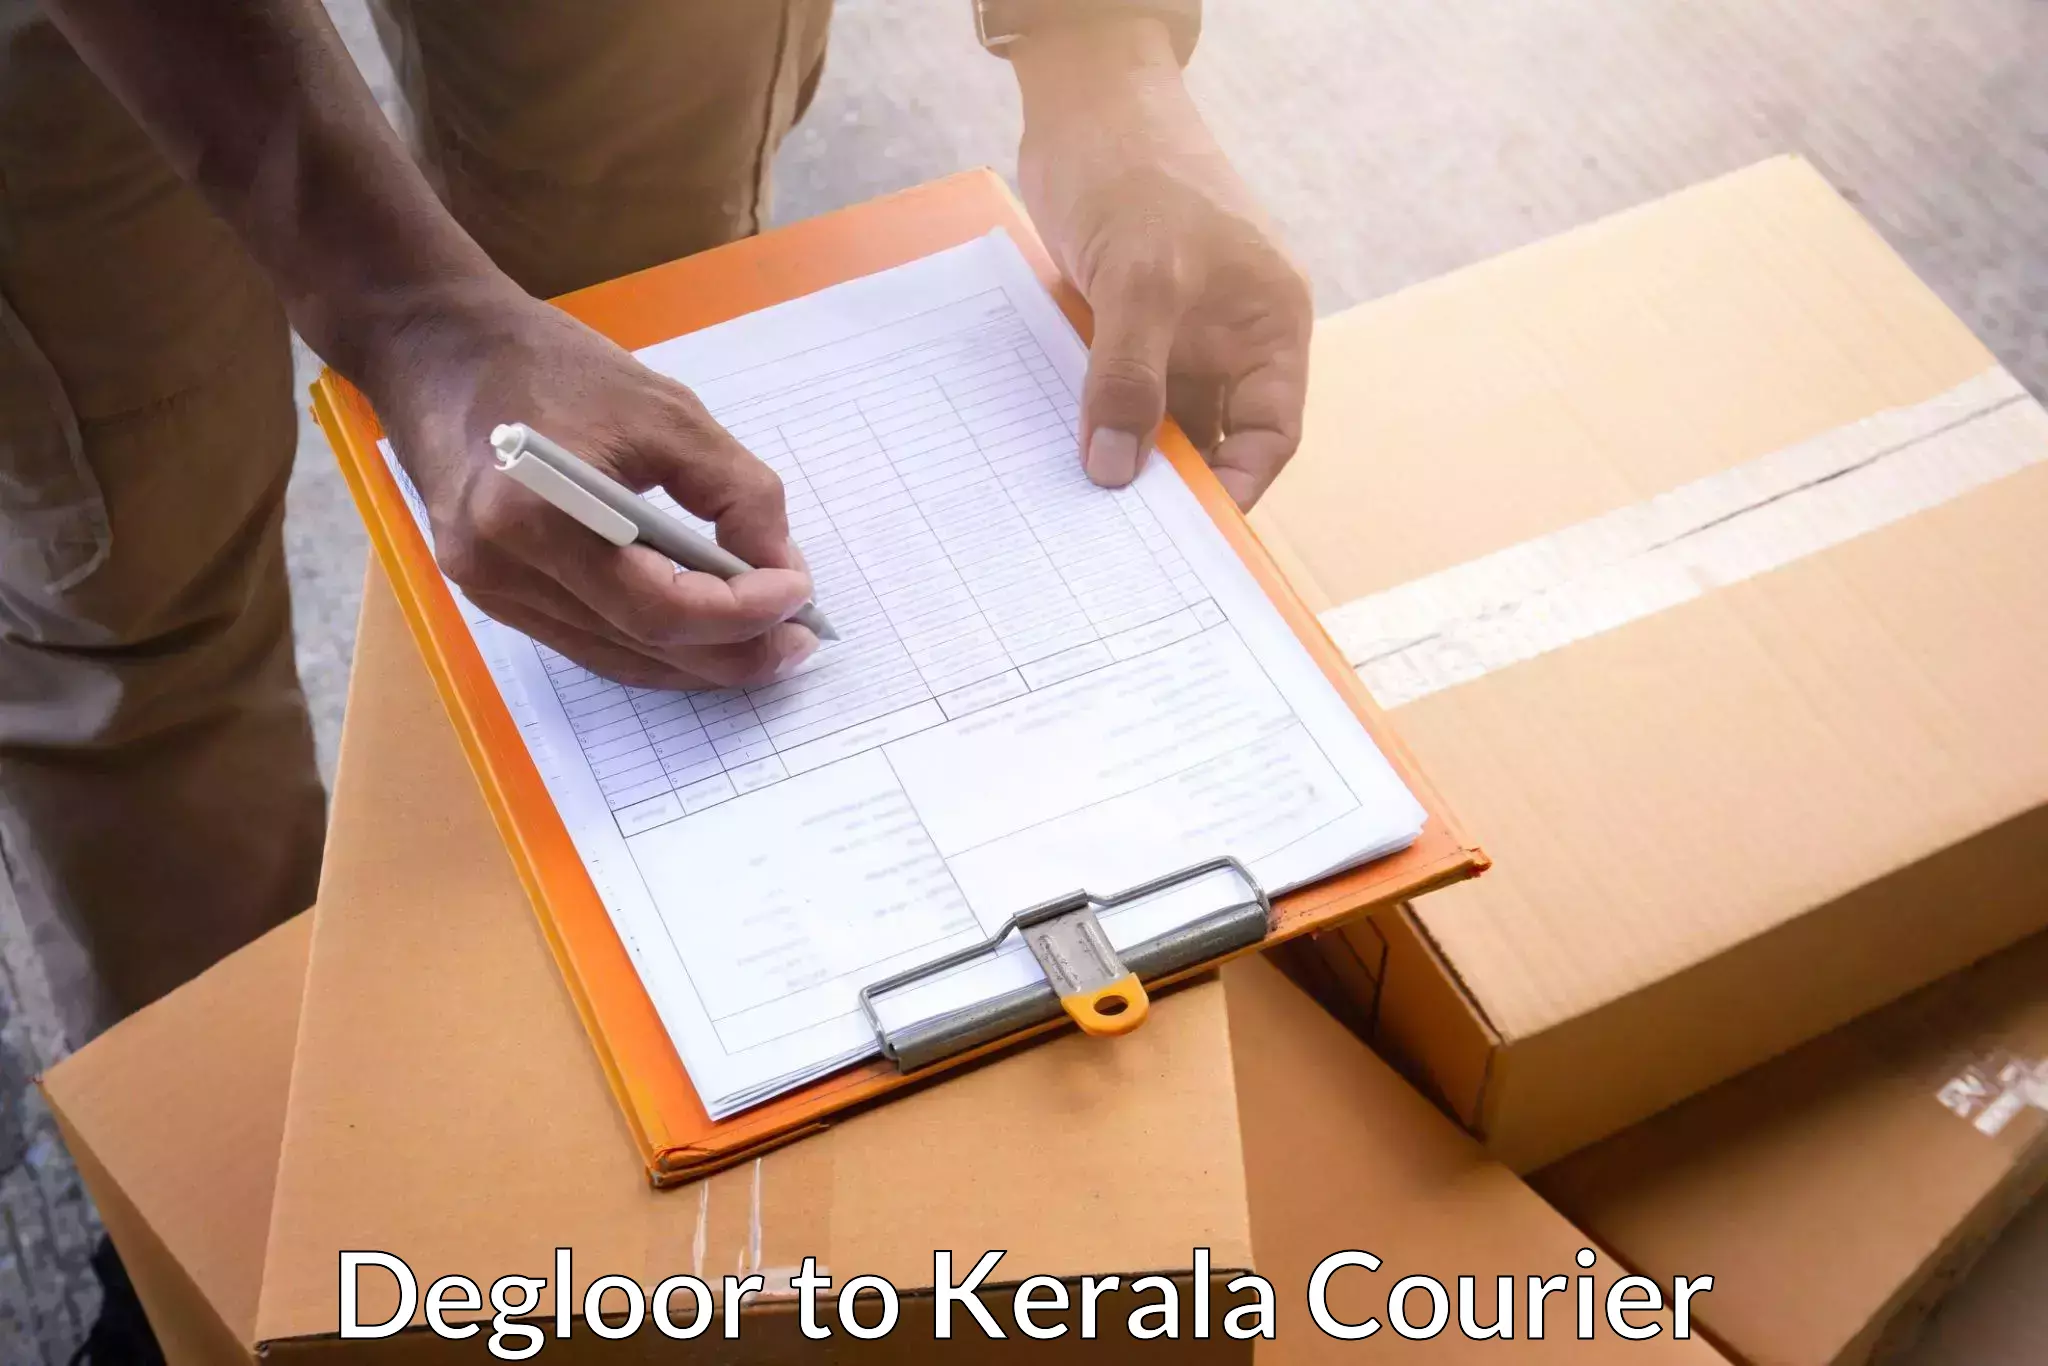 Innovative courier solutions Degloor to Perumbavoor